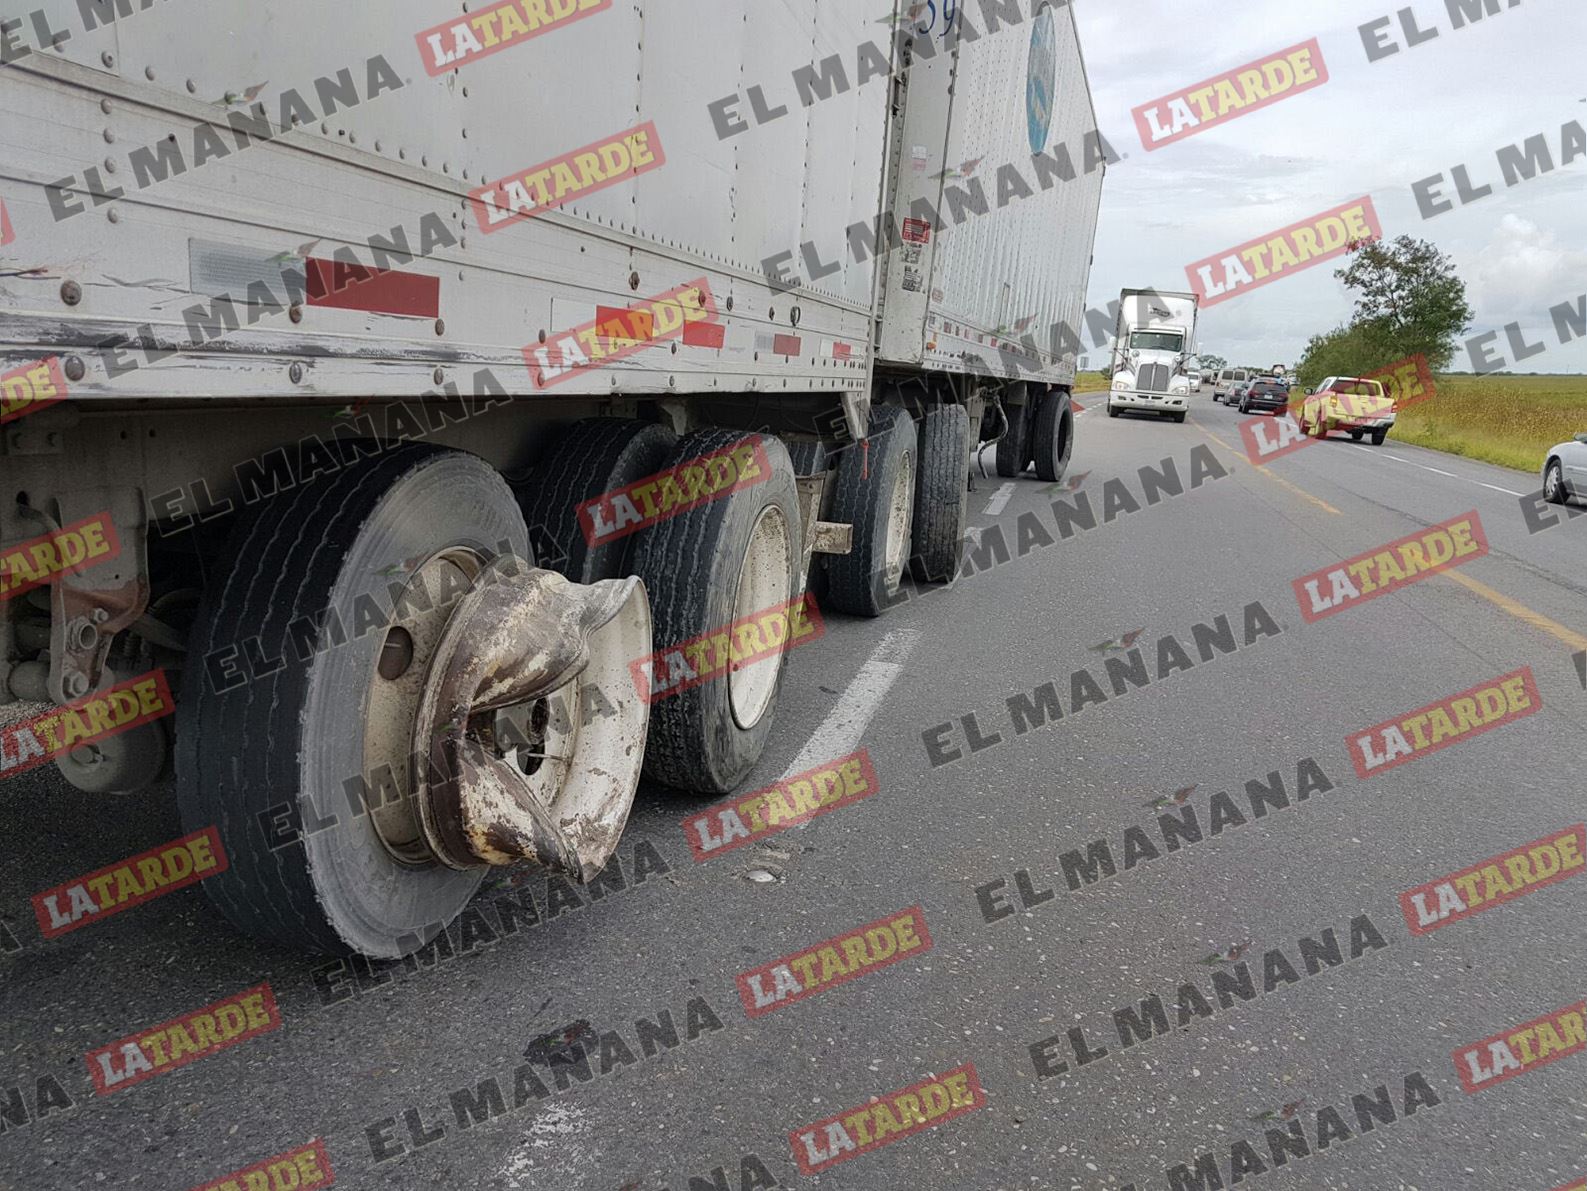 TRAILER. La camioneta Chevrolet, primero se impactó con los neumáticos de la segunda caja de un tráiler. EL MAÑANA / Enrique Manilla